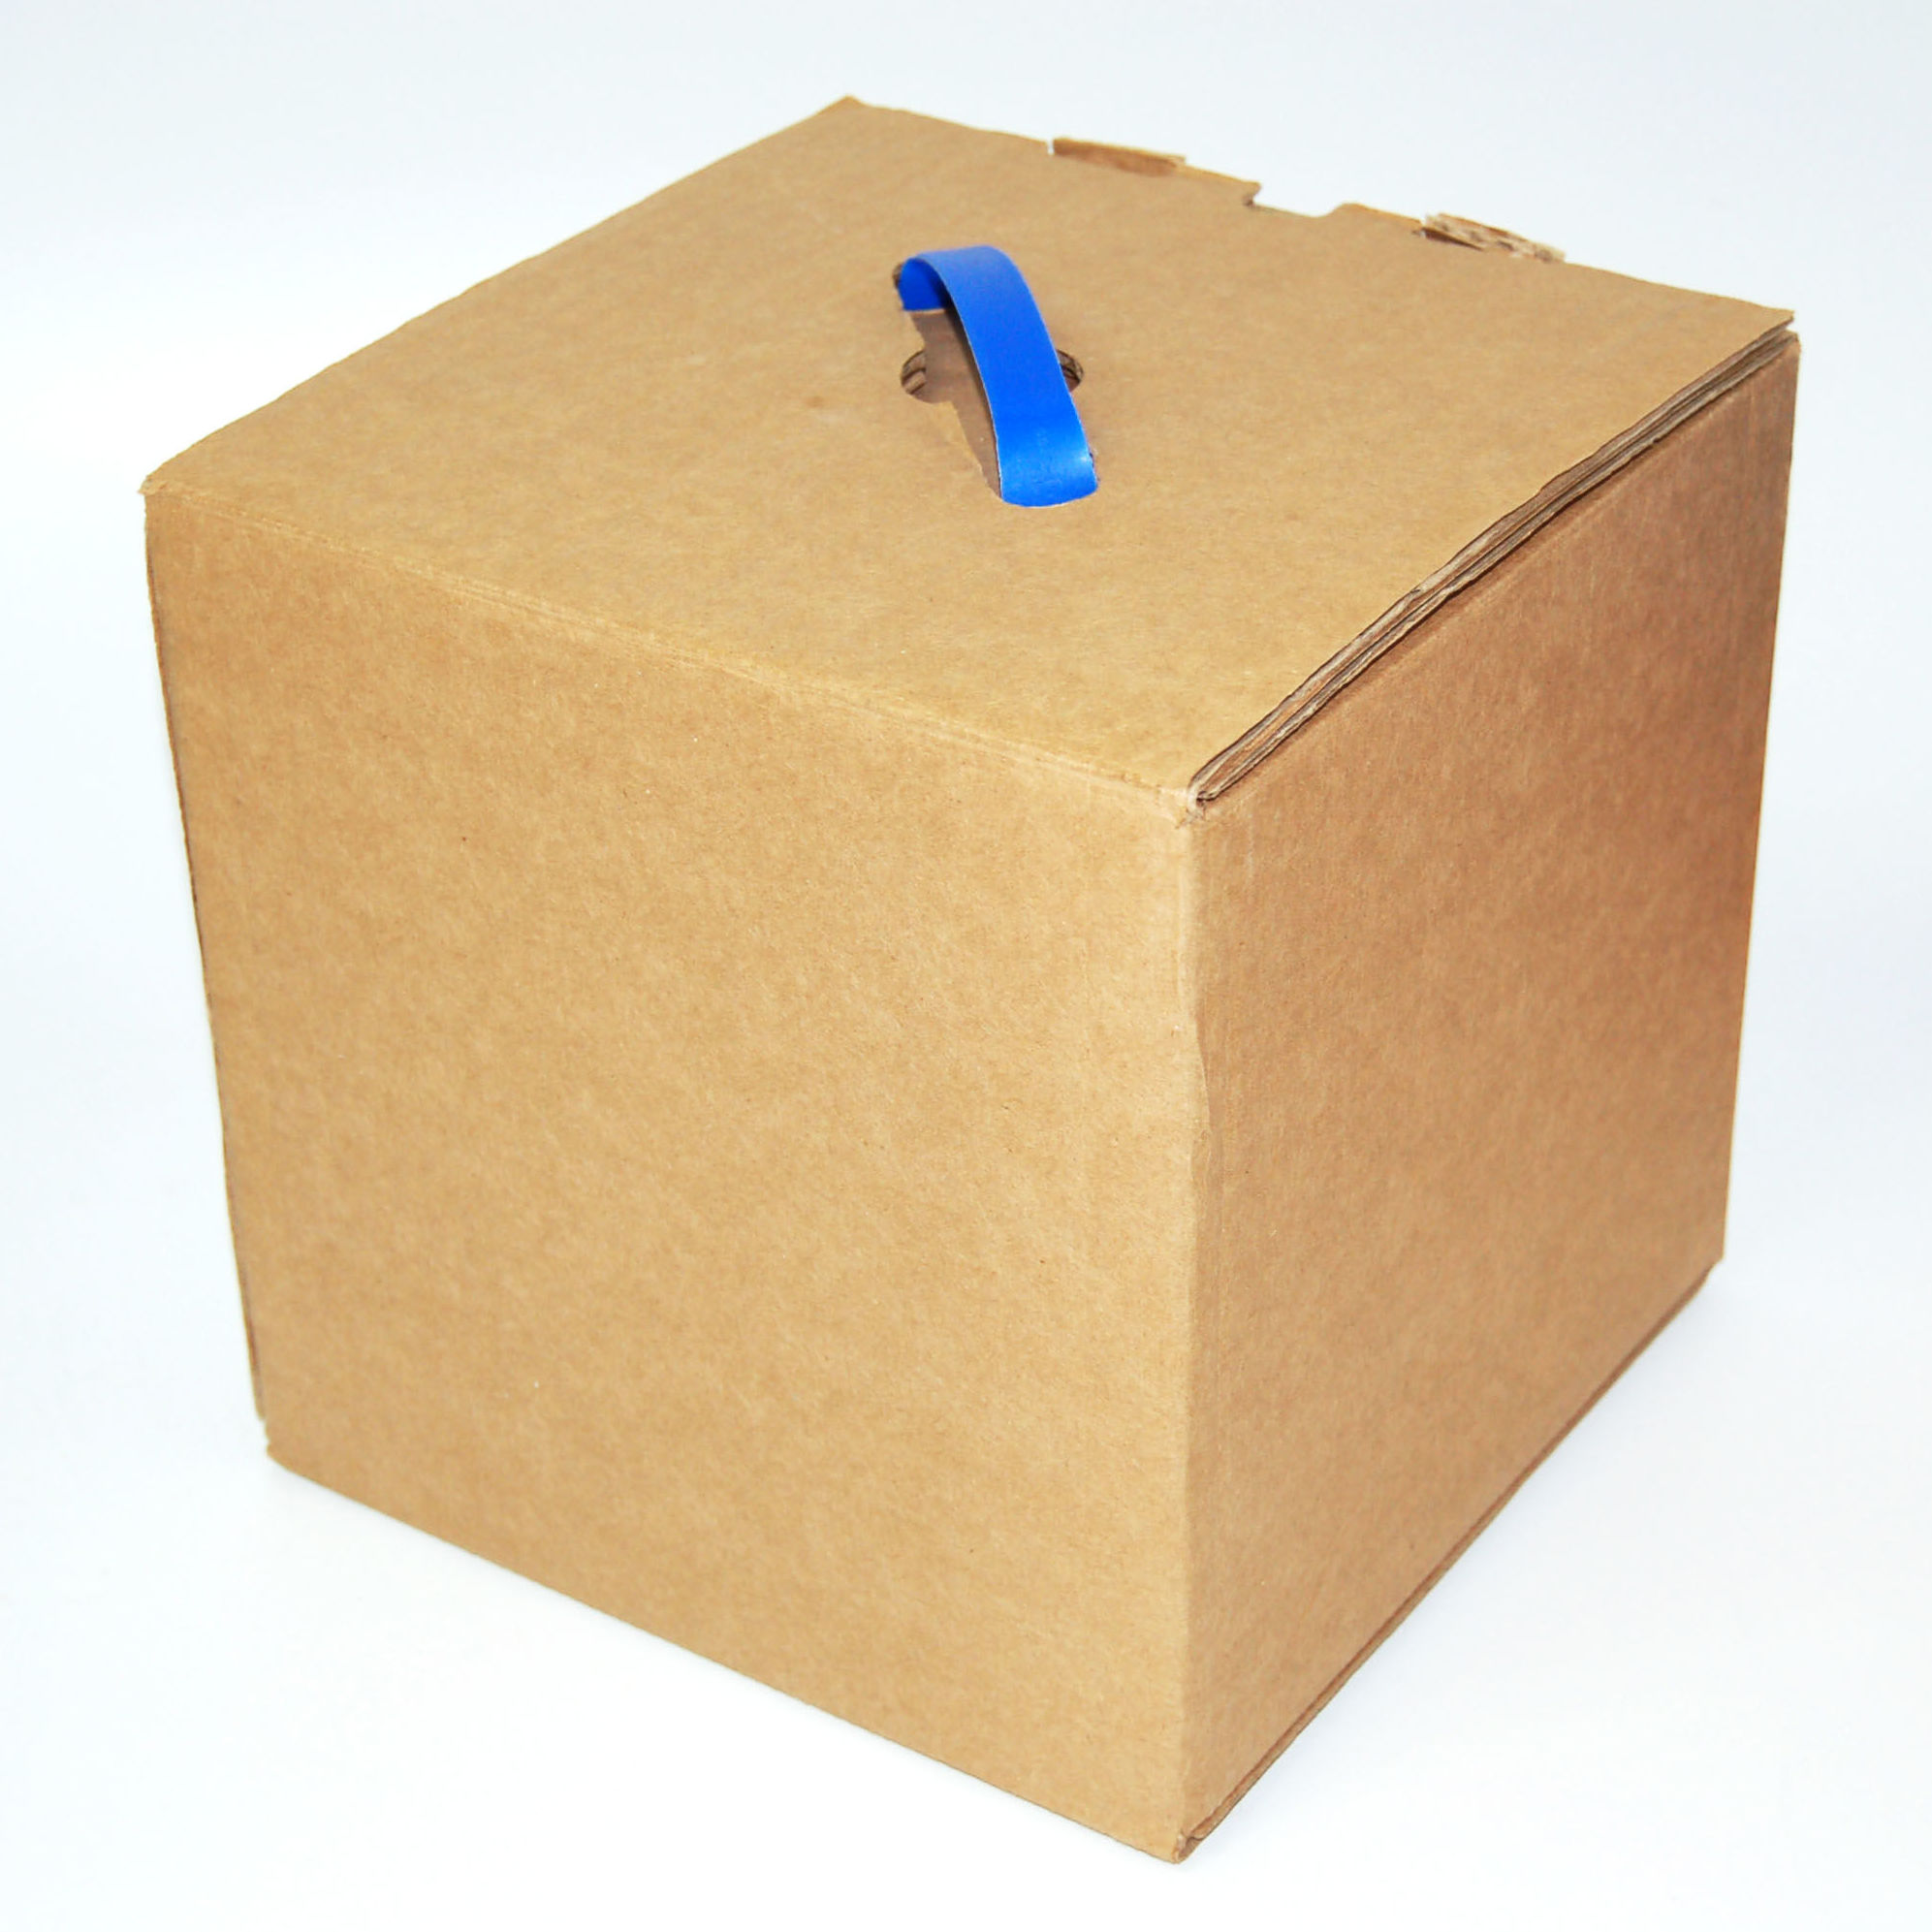 Diseño y fabricación de cajas de cartón y precinto de embalaje